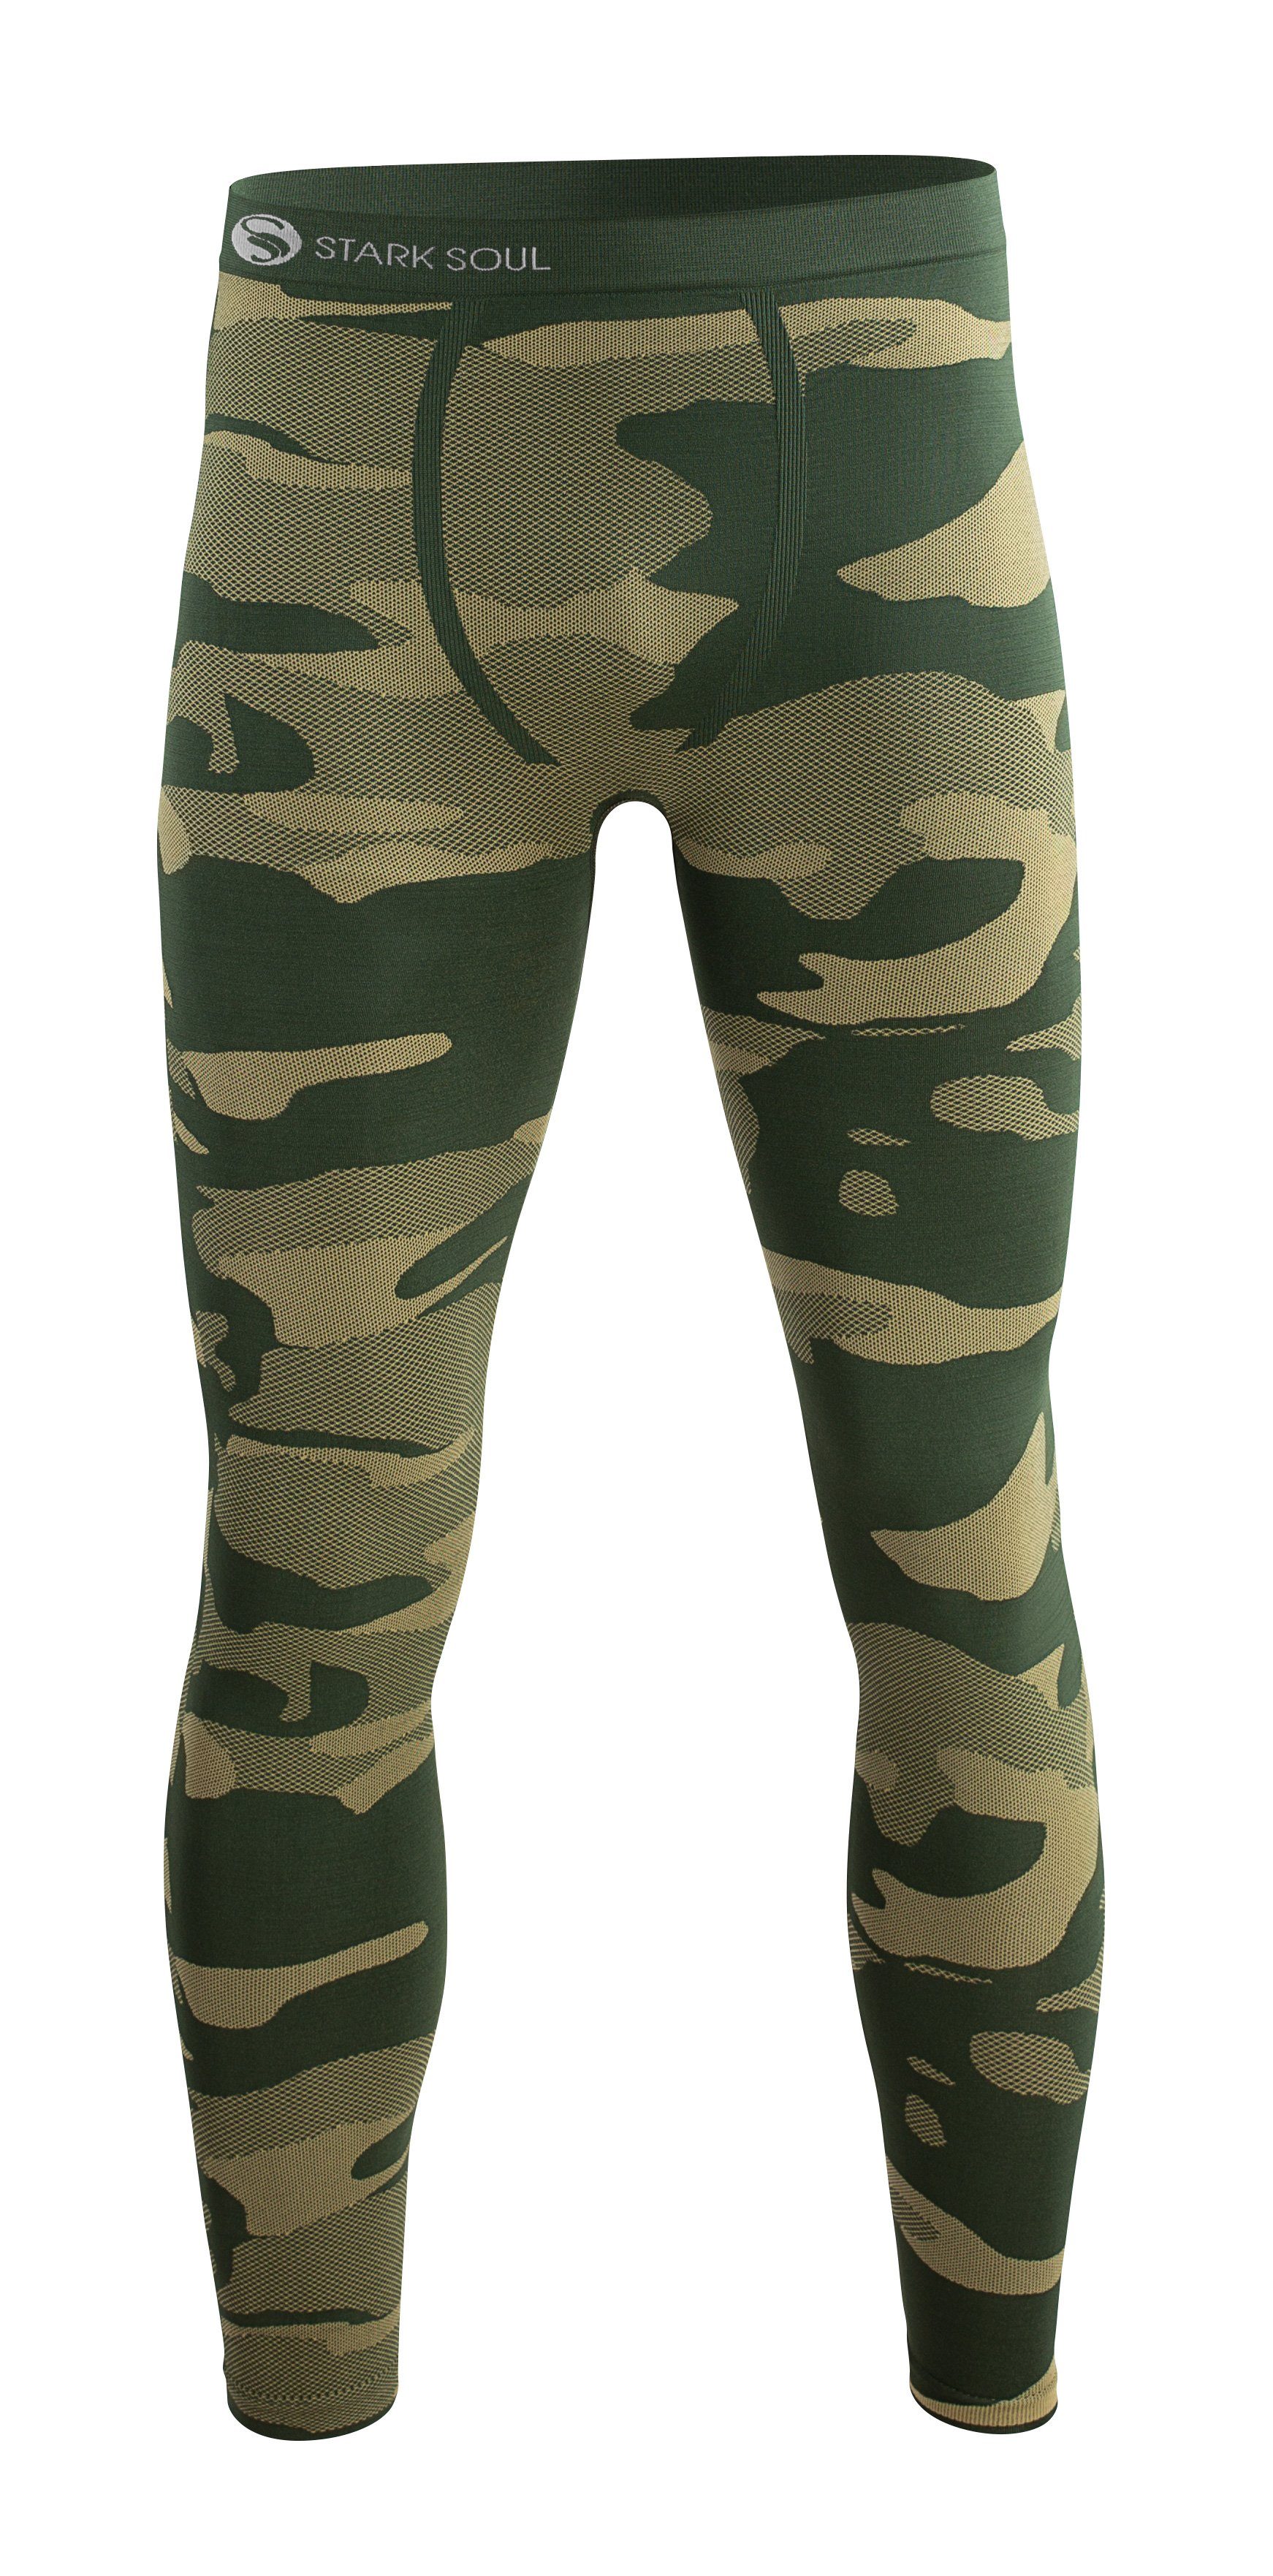 Stark Soul® Funktionshose Funktionshose - Camouflage, Seamless, Thermo-Funktionsunterwäsche, Herren mit elastischem Bund Grün